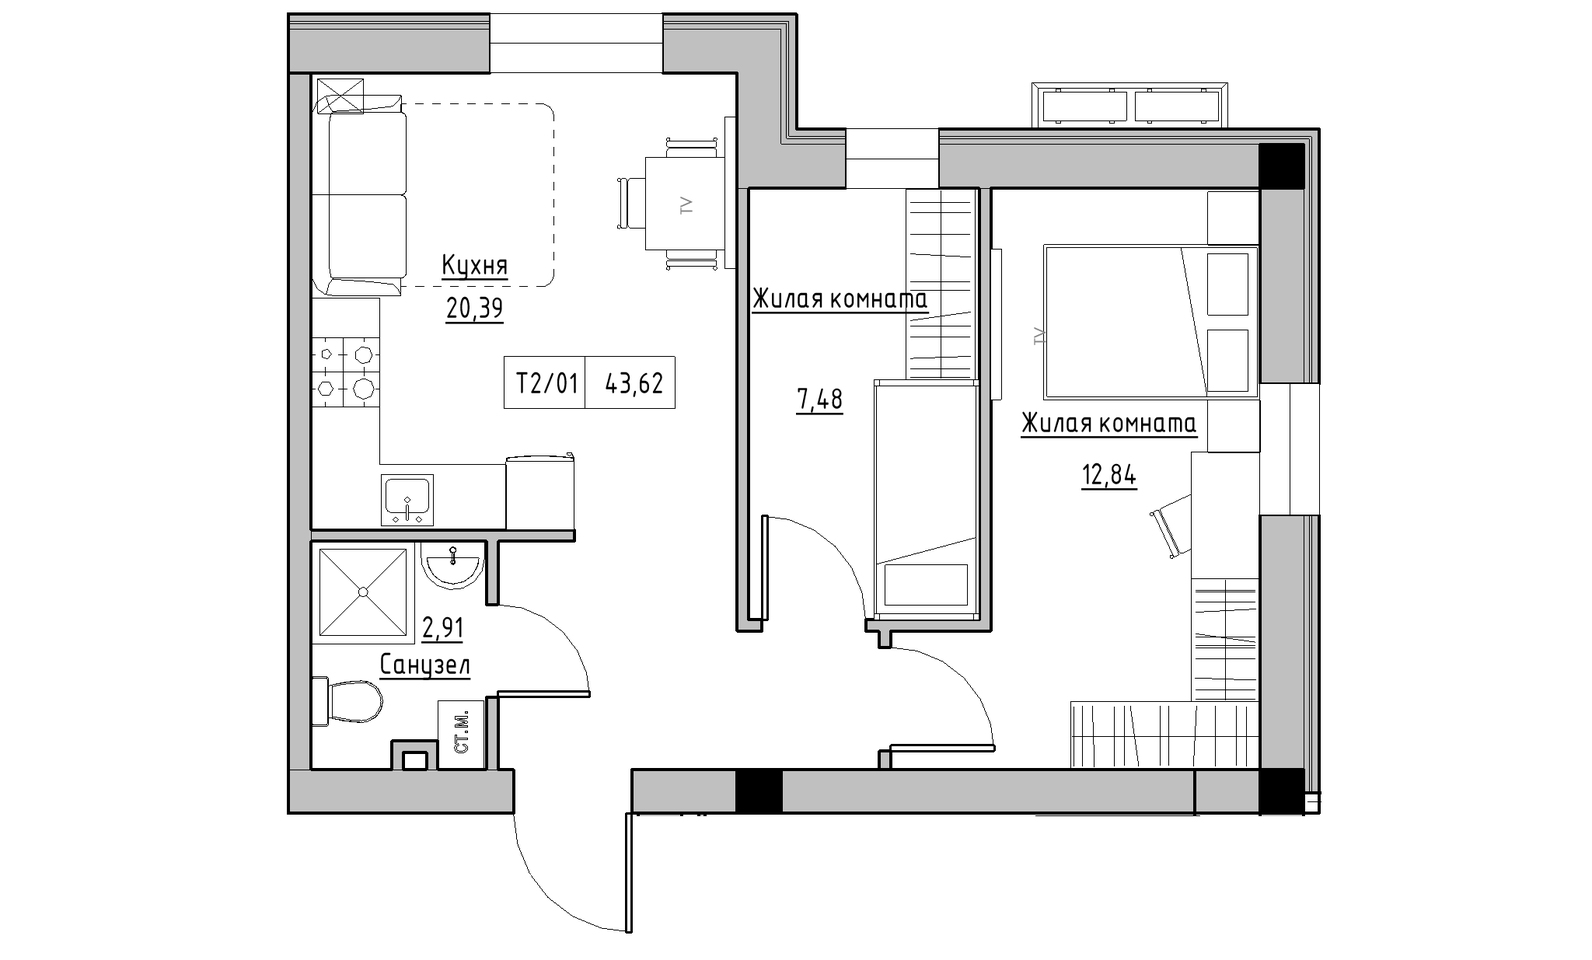 Планування 2-к квартира площею 43.62м2, KS-014-01/0008.